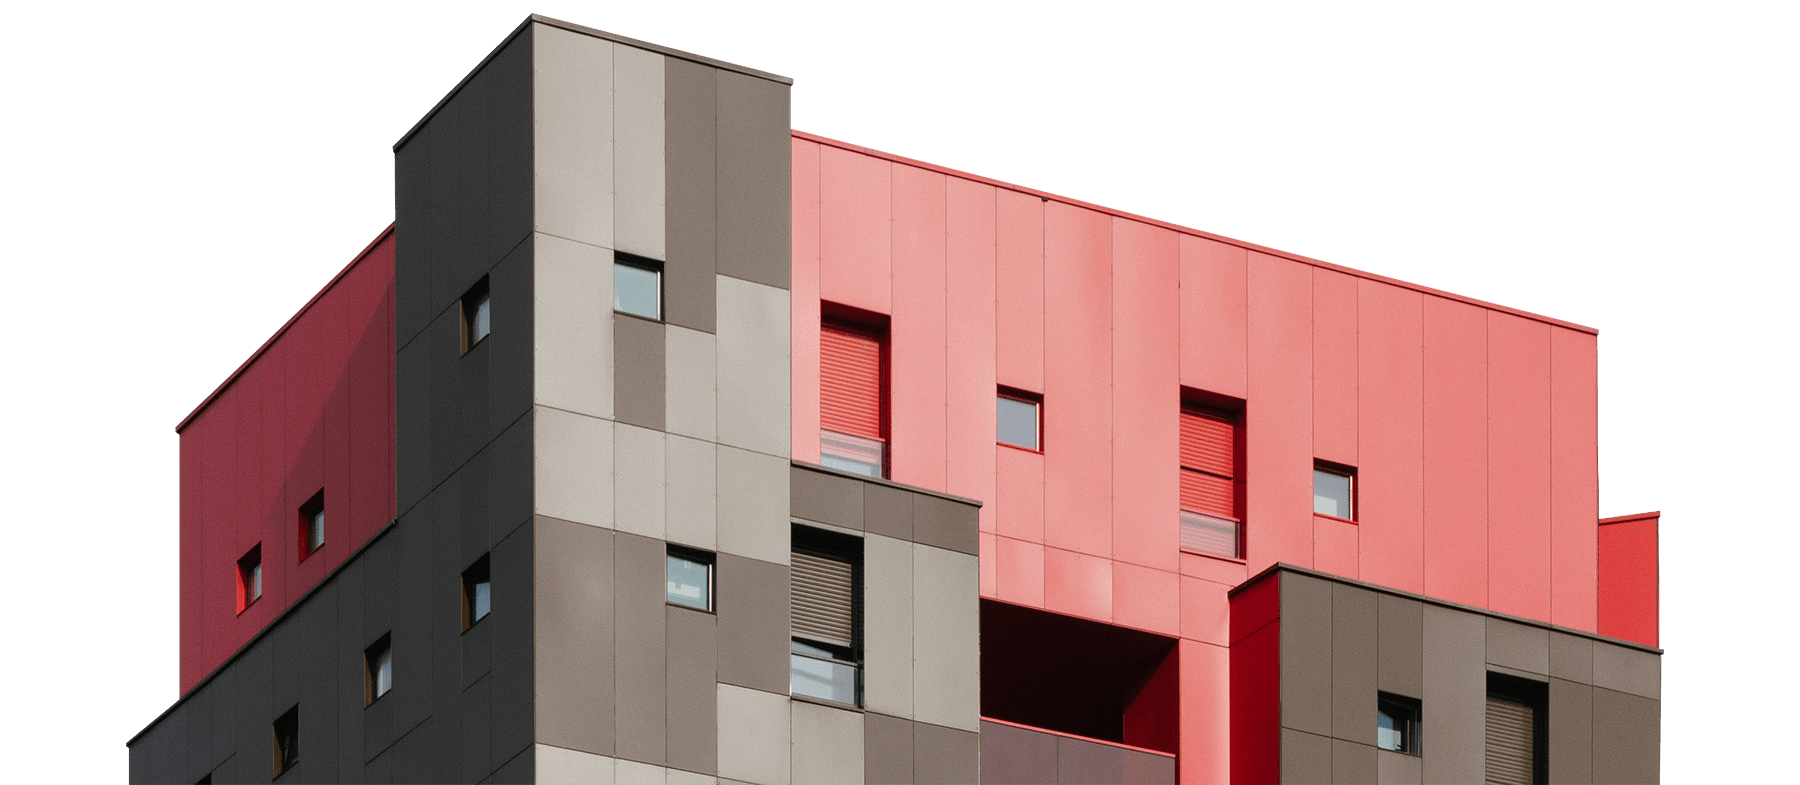 Neubau von einem Hochhause mit rotem Dach